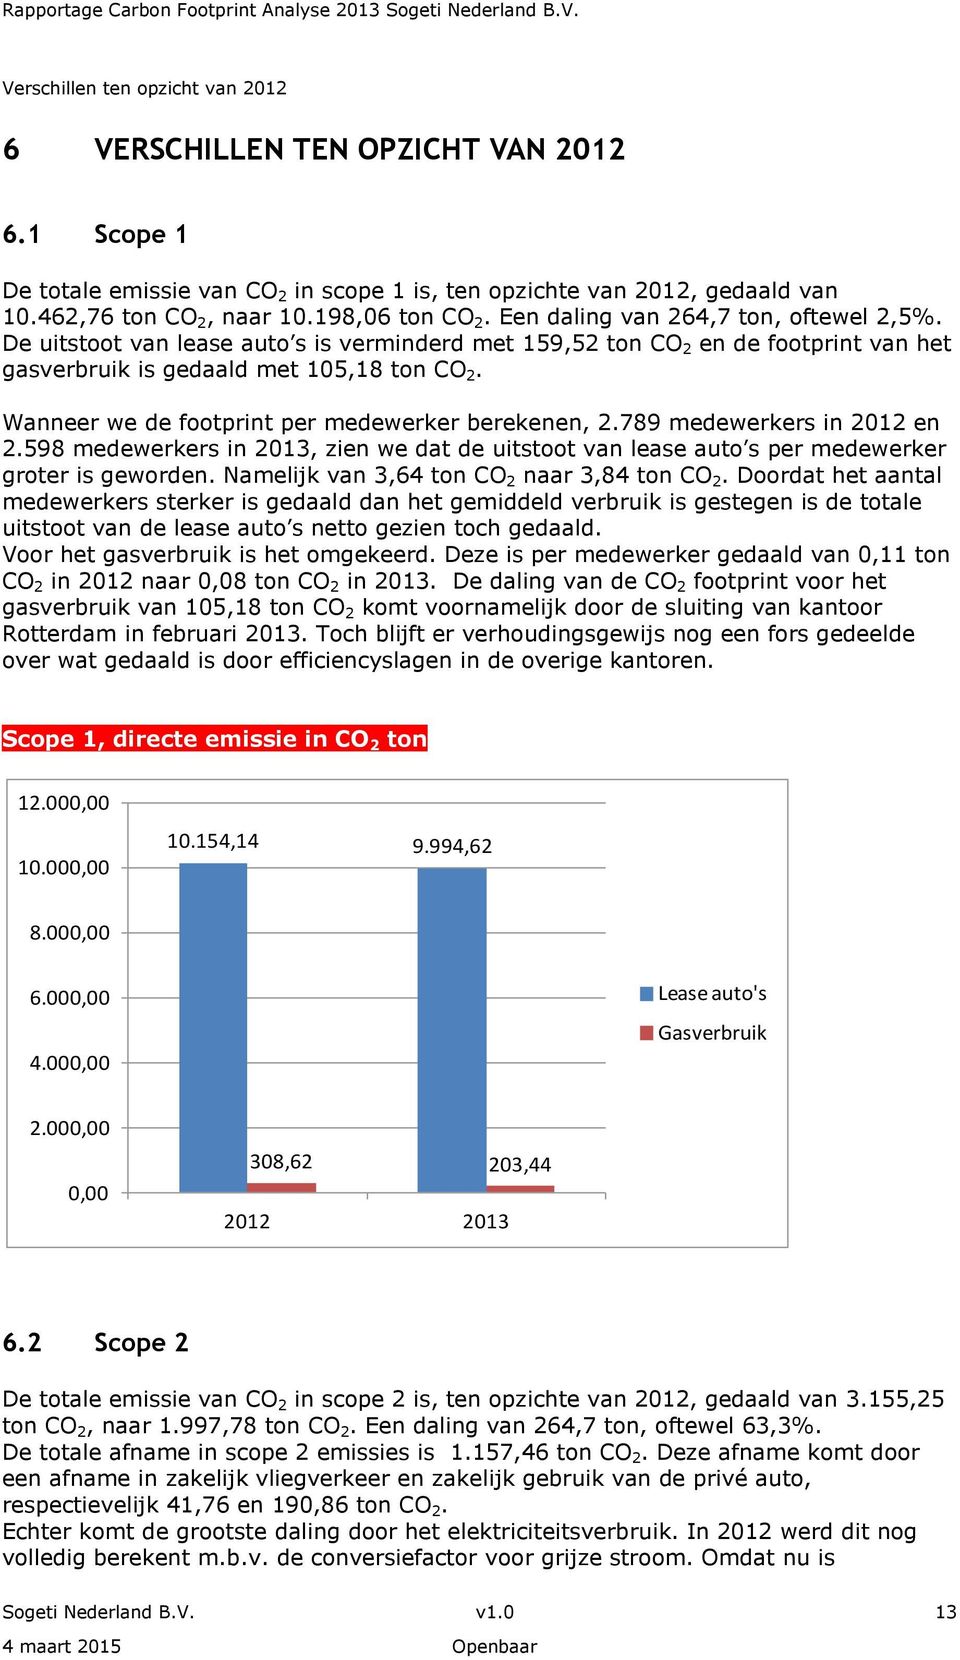 Wanneer we de footprint per medewerker berekenen, 2.789 medewerkers in 2012 en 2.598 medewerkers in 2013, zien we dat de uitstoot van lease auto s per medewerker groter is geworden.